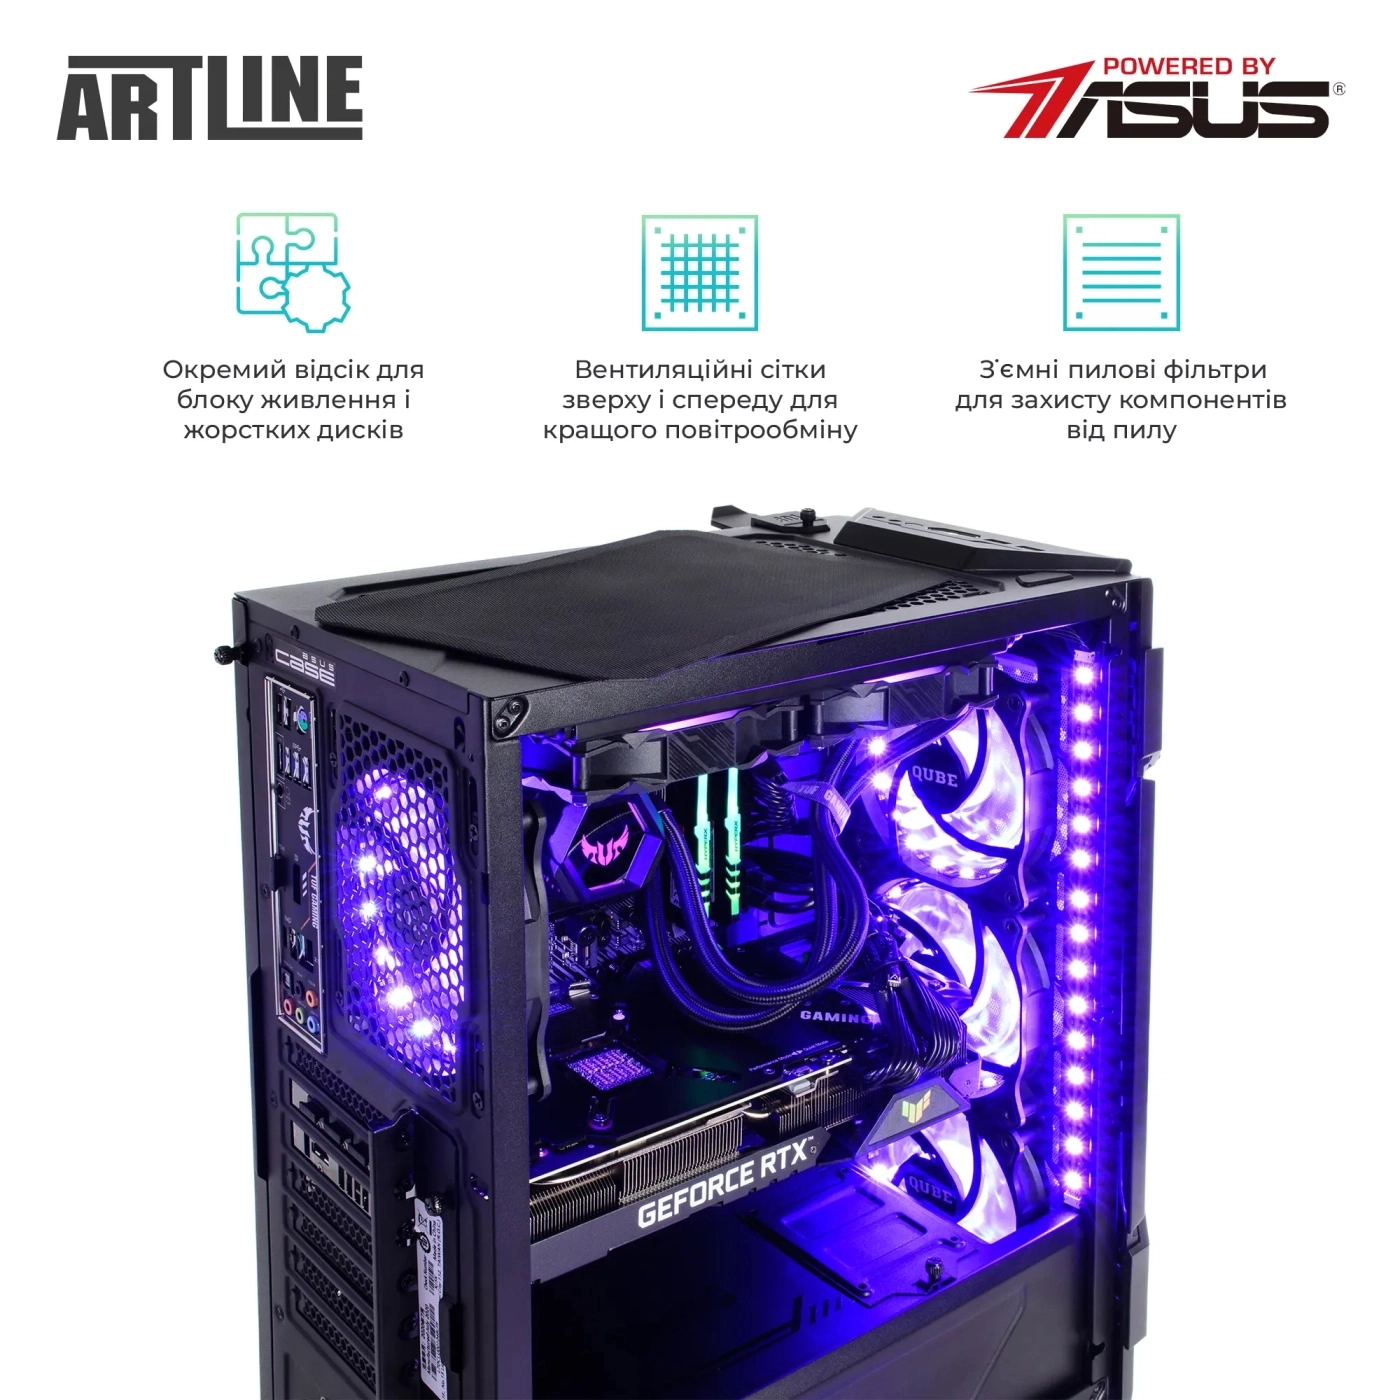 Купить Компьютер ARTLINE Gaming GT301v08 - фото 7